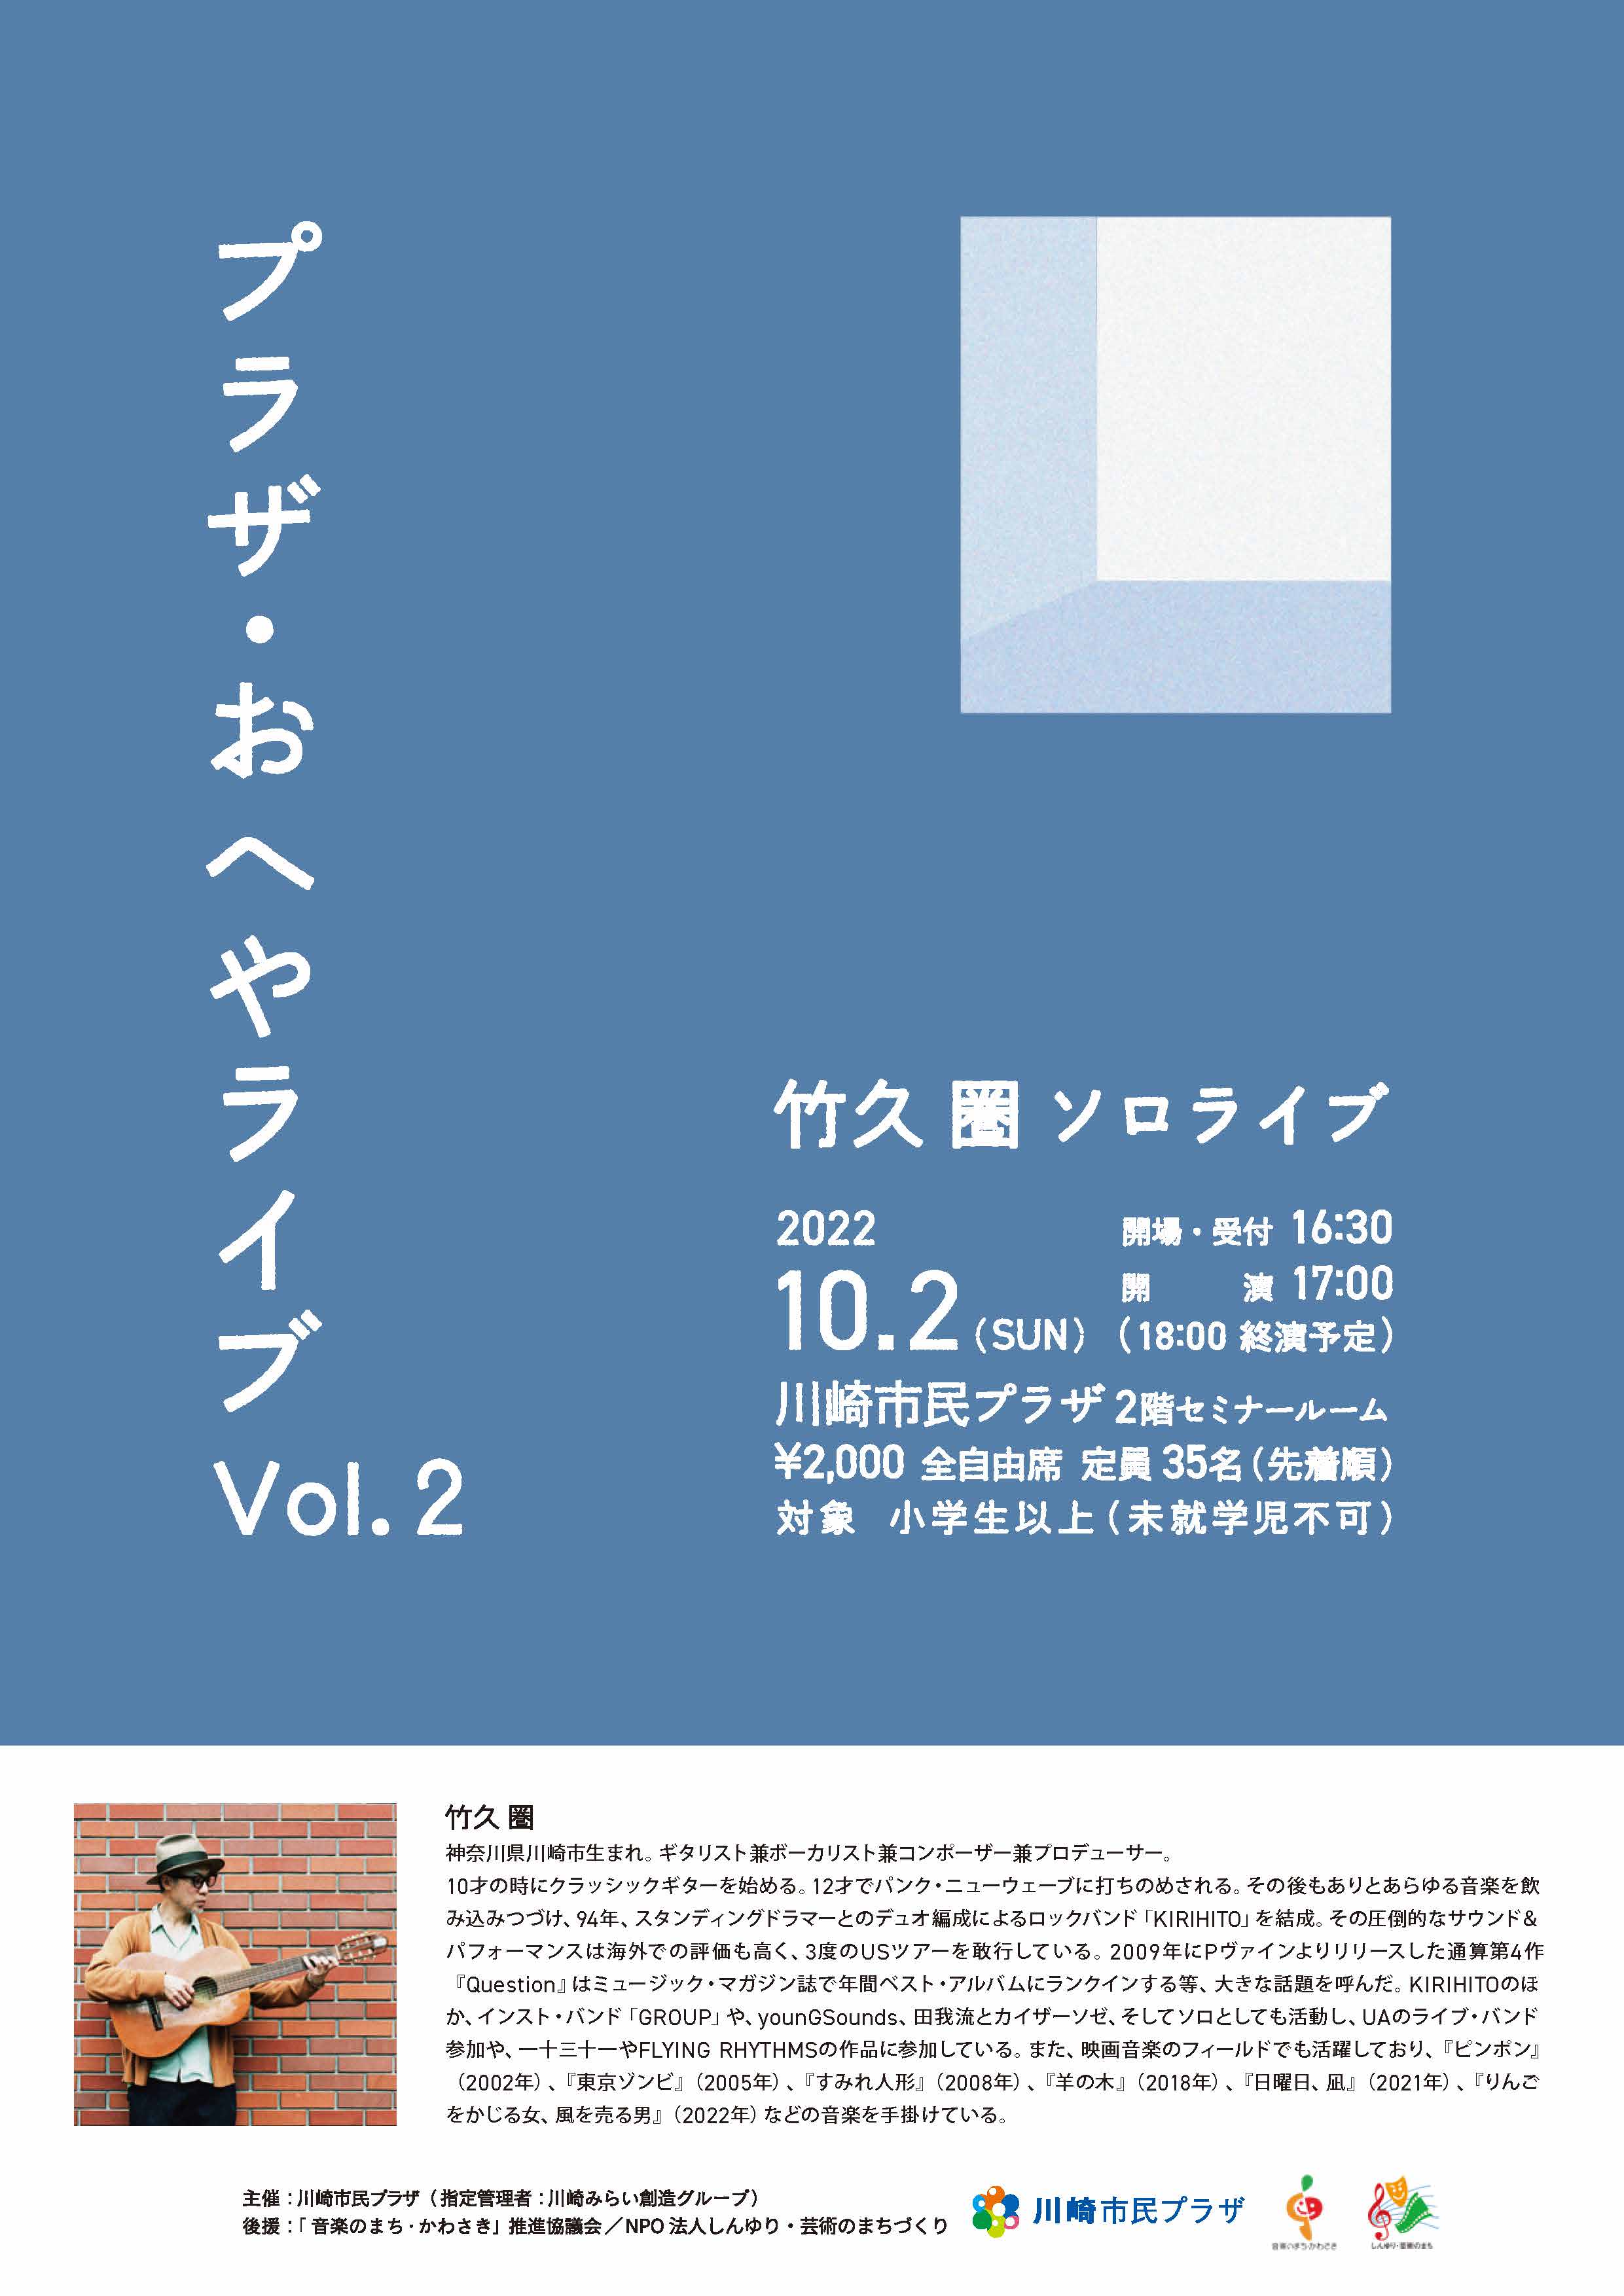 【2022年10月2日】プラザ・おへやライブ Vol.2 ～竹久圏 ソロライブ～（8/2受付開始！）